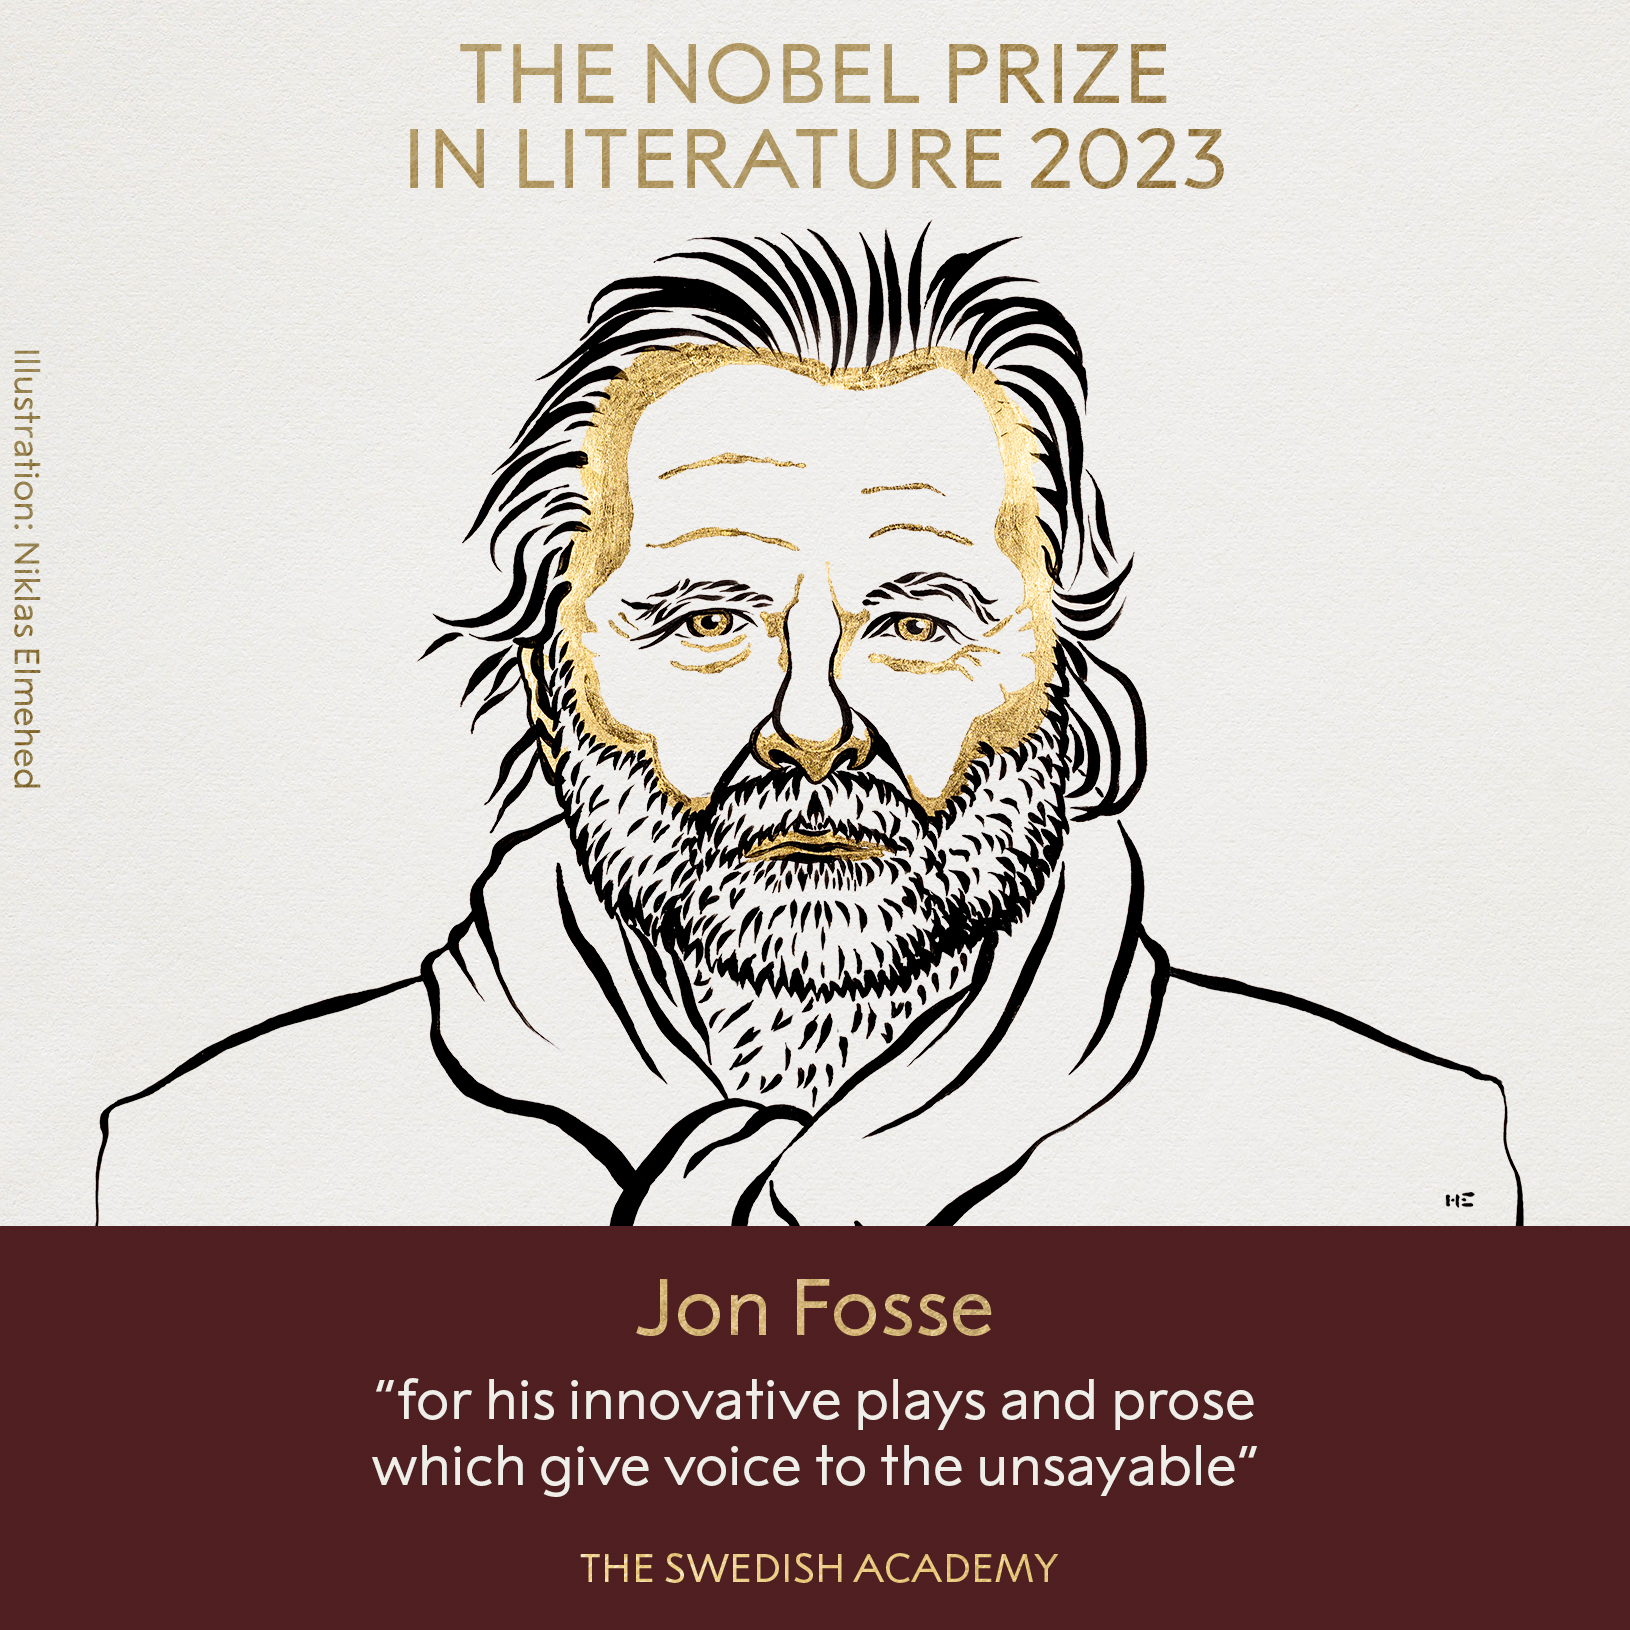 فوز الروائي النرويجي جون فوس بجائزة نوبل للأدب